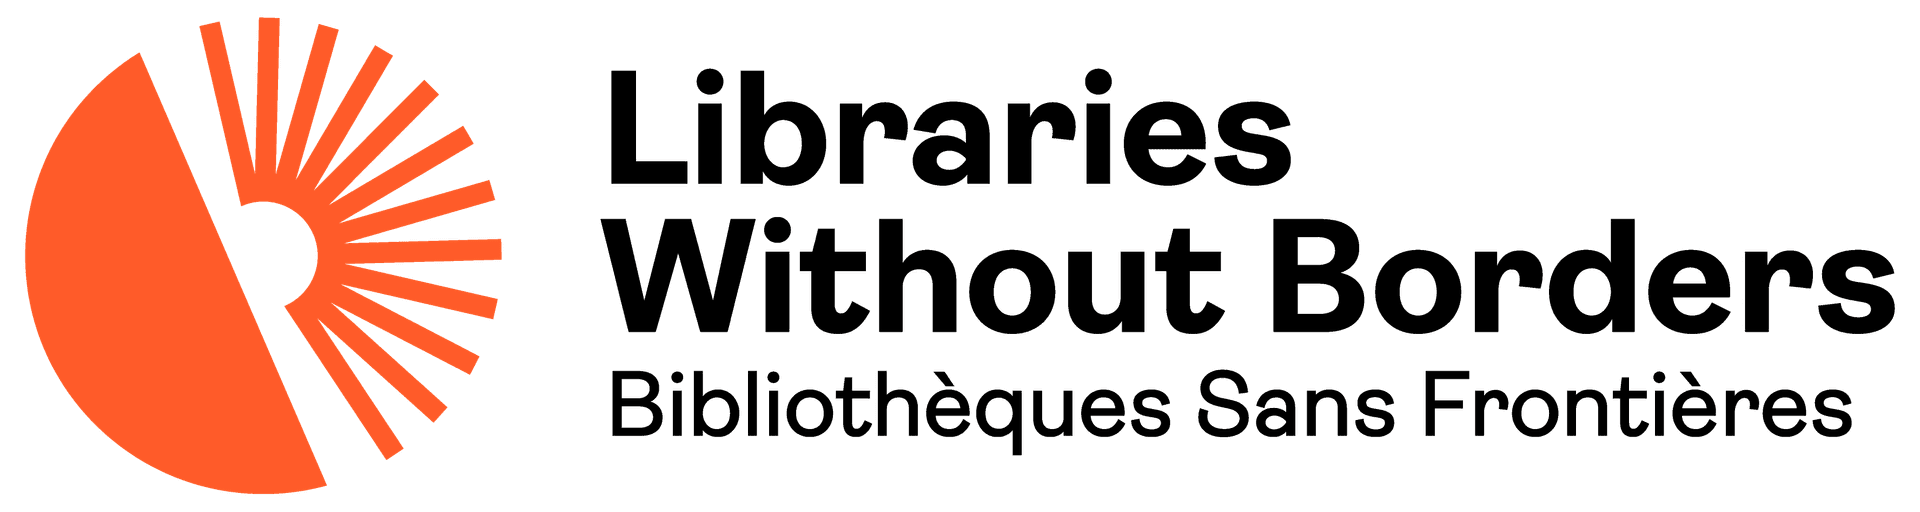 Bibliothèques Sans Frontières (BSF) 